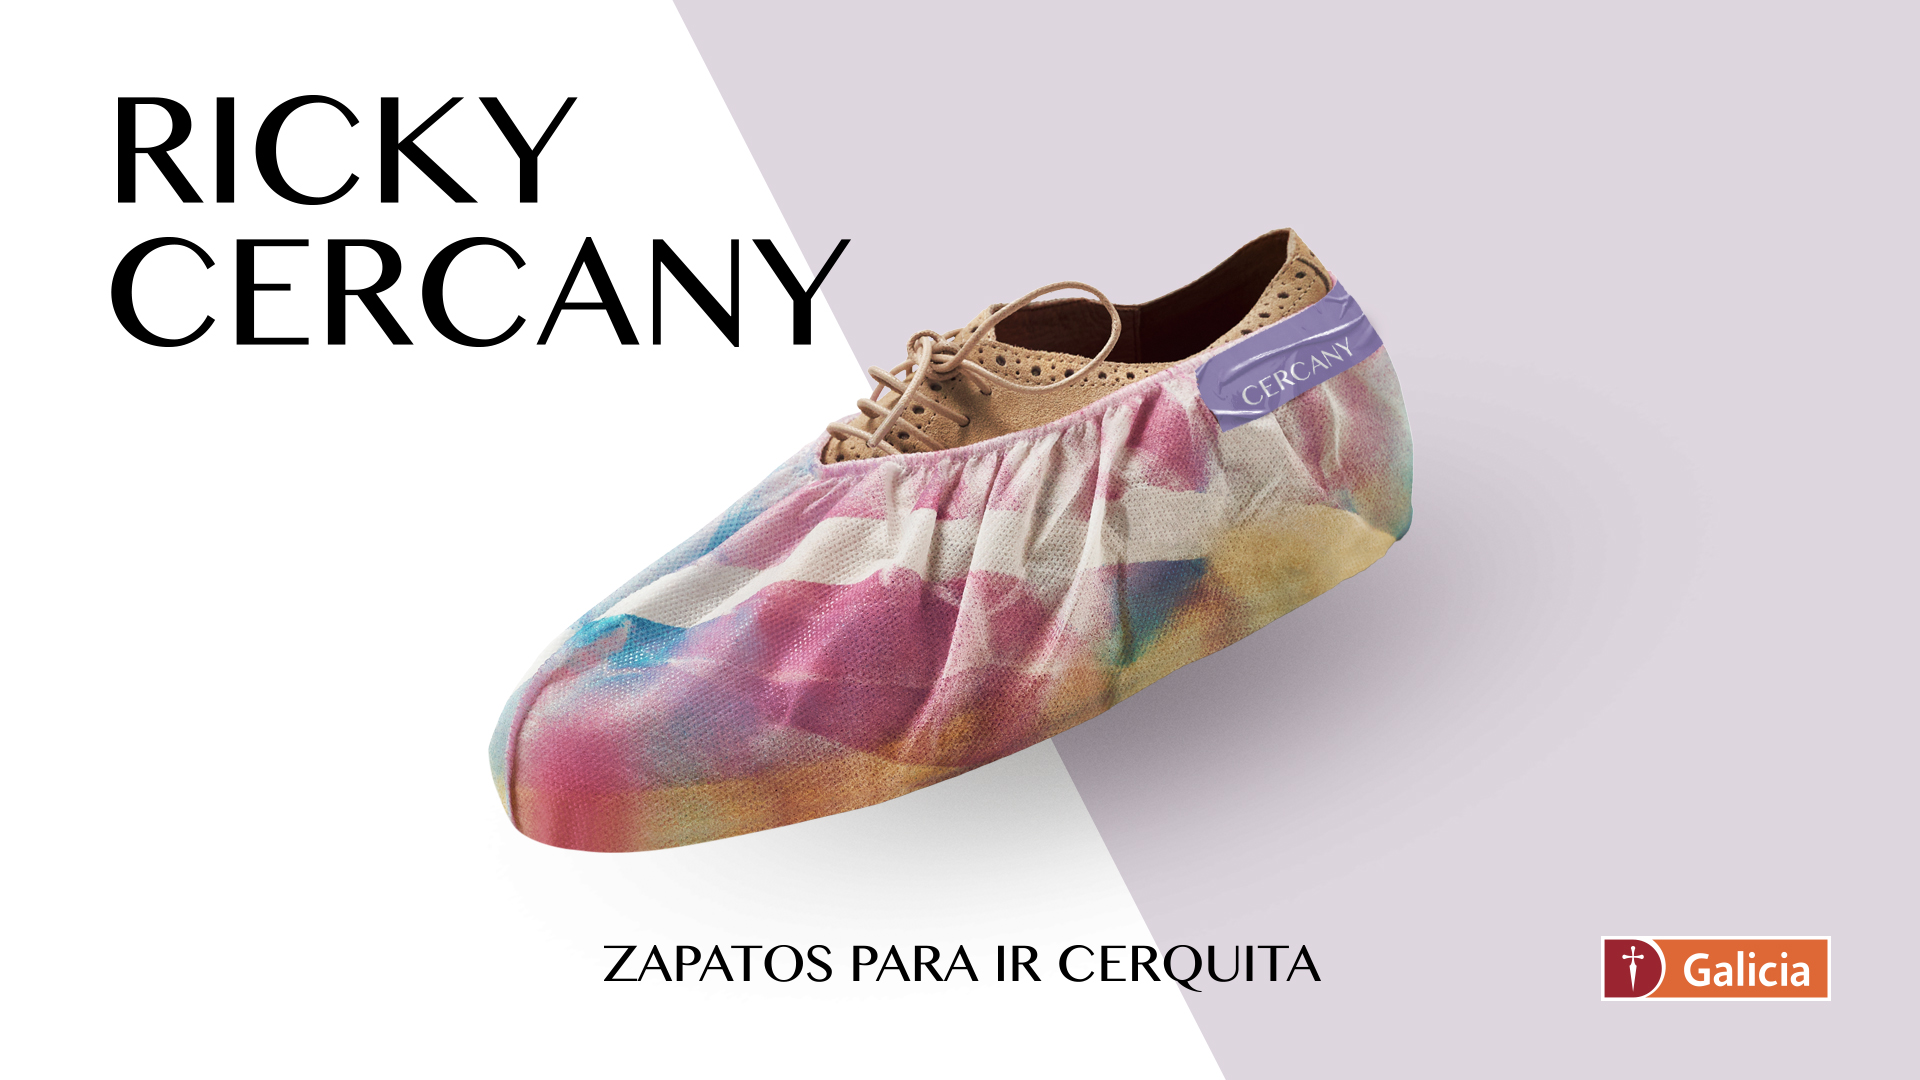 Ricky Cercany, by Galicia